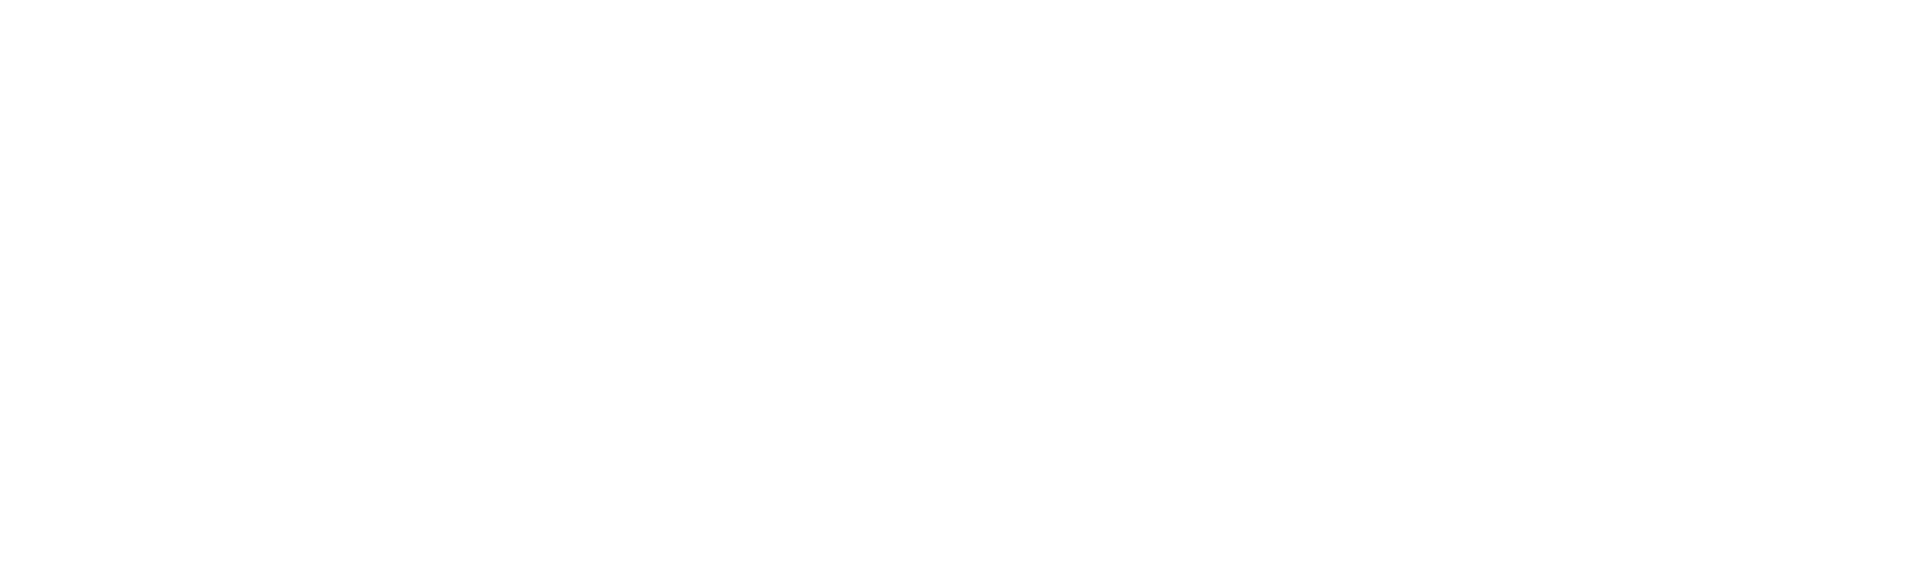 Mark3D - Print Stronger